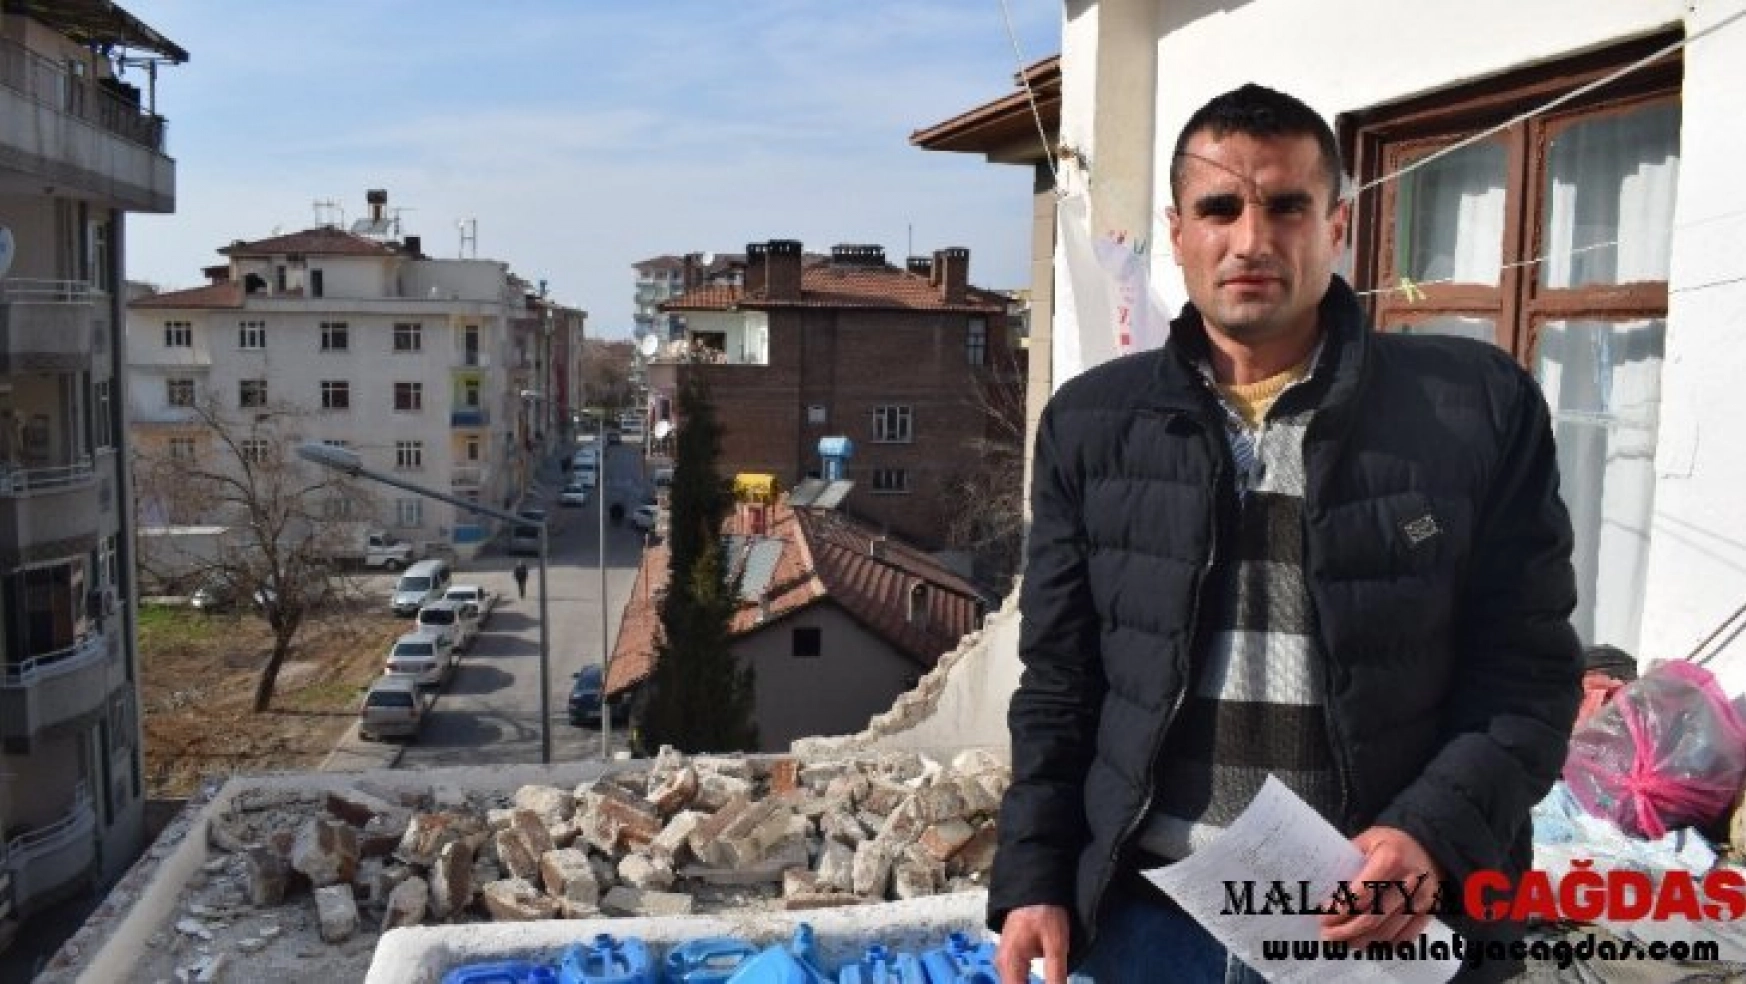 Malatya'da 1 kişinin hayatını kaybettiği bina için tahliye talebi